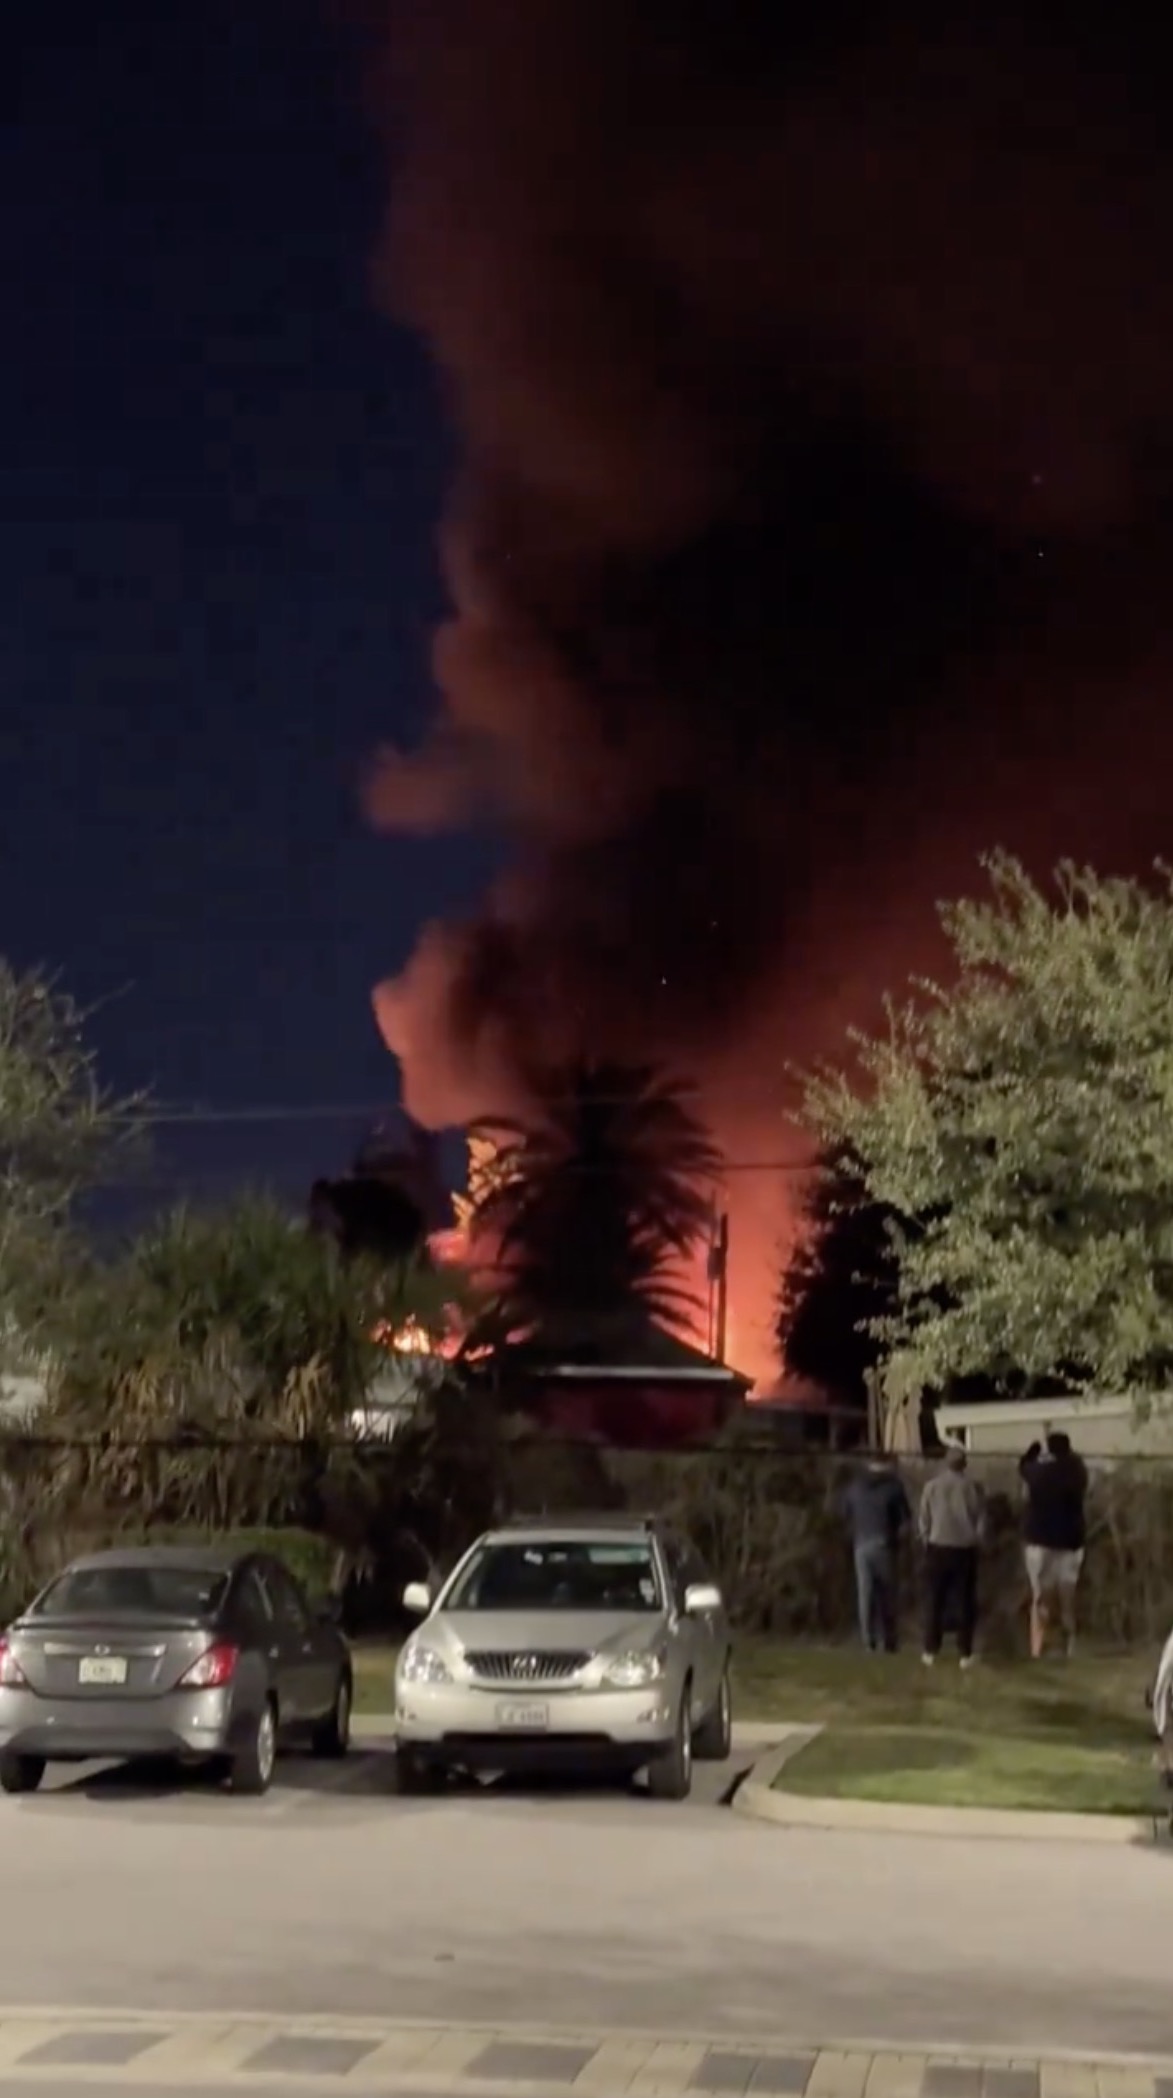 Das Video zeigte einen Großbrand in einem Wohnmobilpark